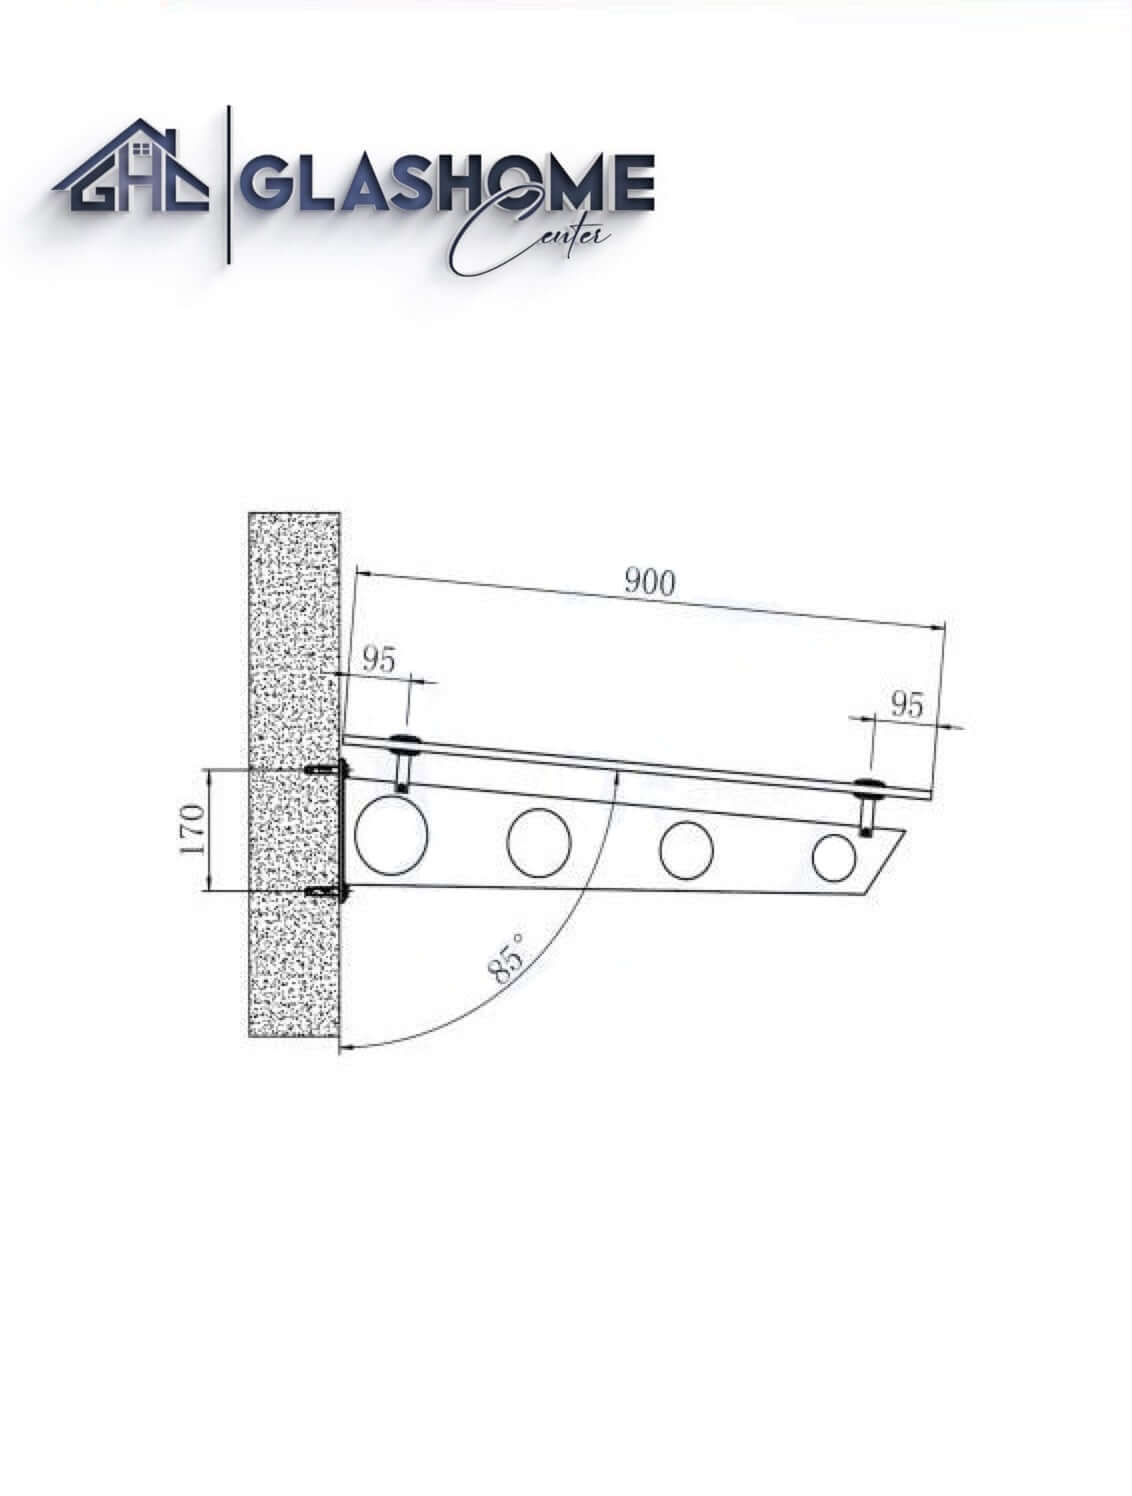 GlasHomeCenter - Glasvordach - Grauglas - 150x90cm - 13,1mm VSG - incl. 2 Edelstahlhalterungen variante "Stoccolma"